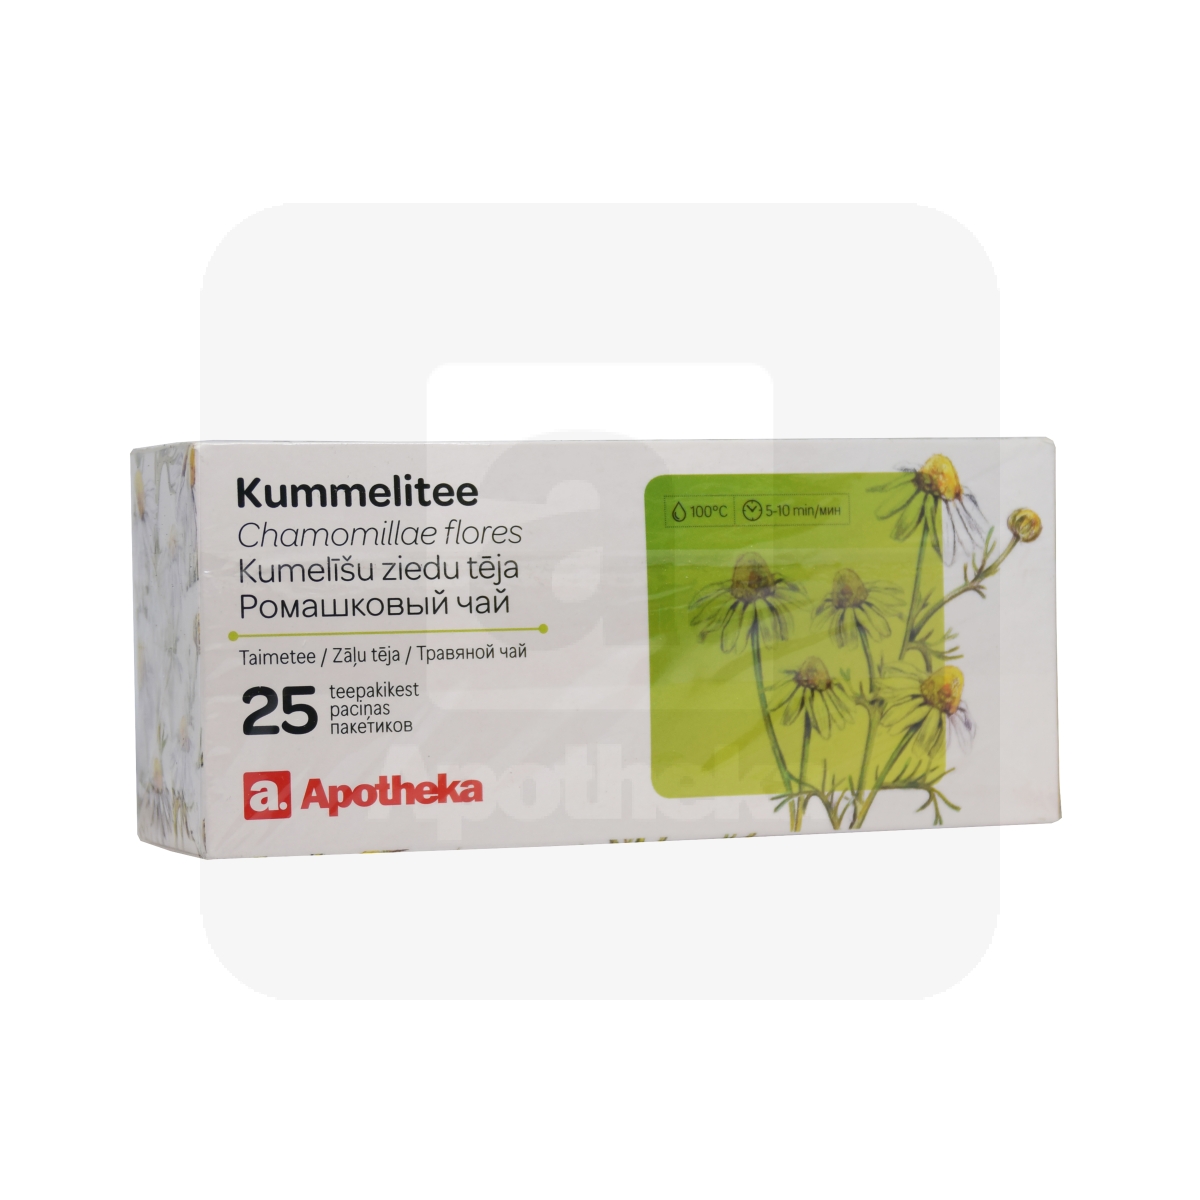 A. KUMMELITEE (CHAMOMILLAE FLORES) 1G N25